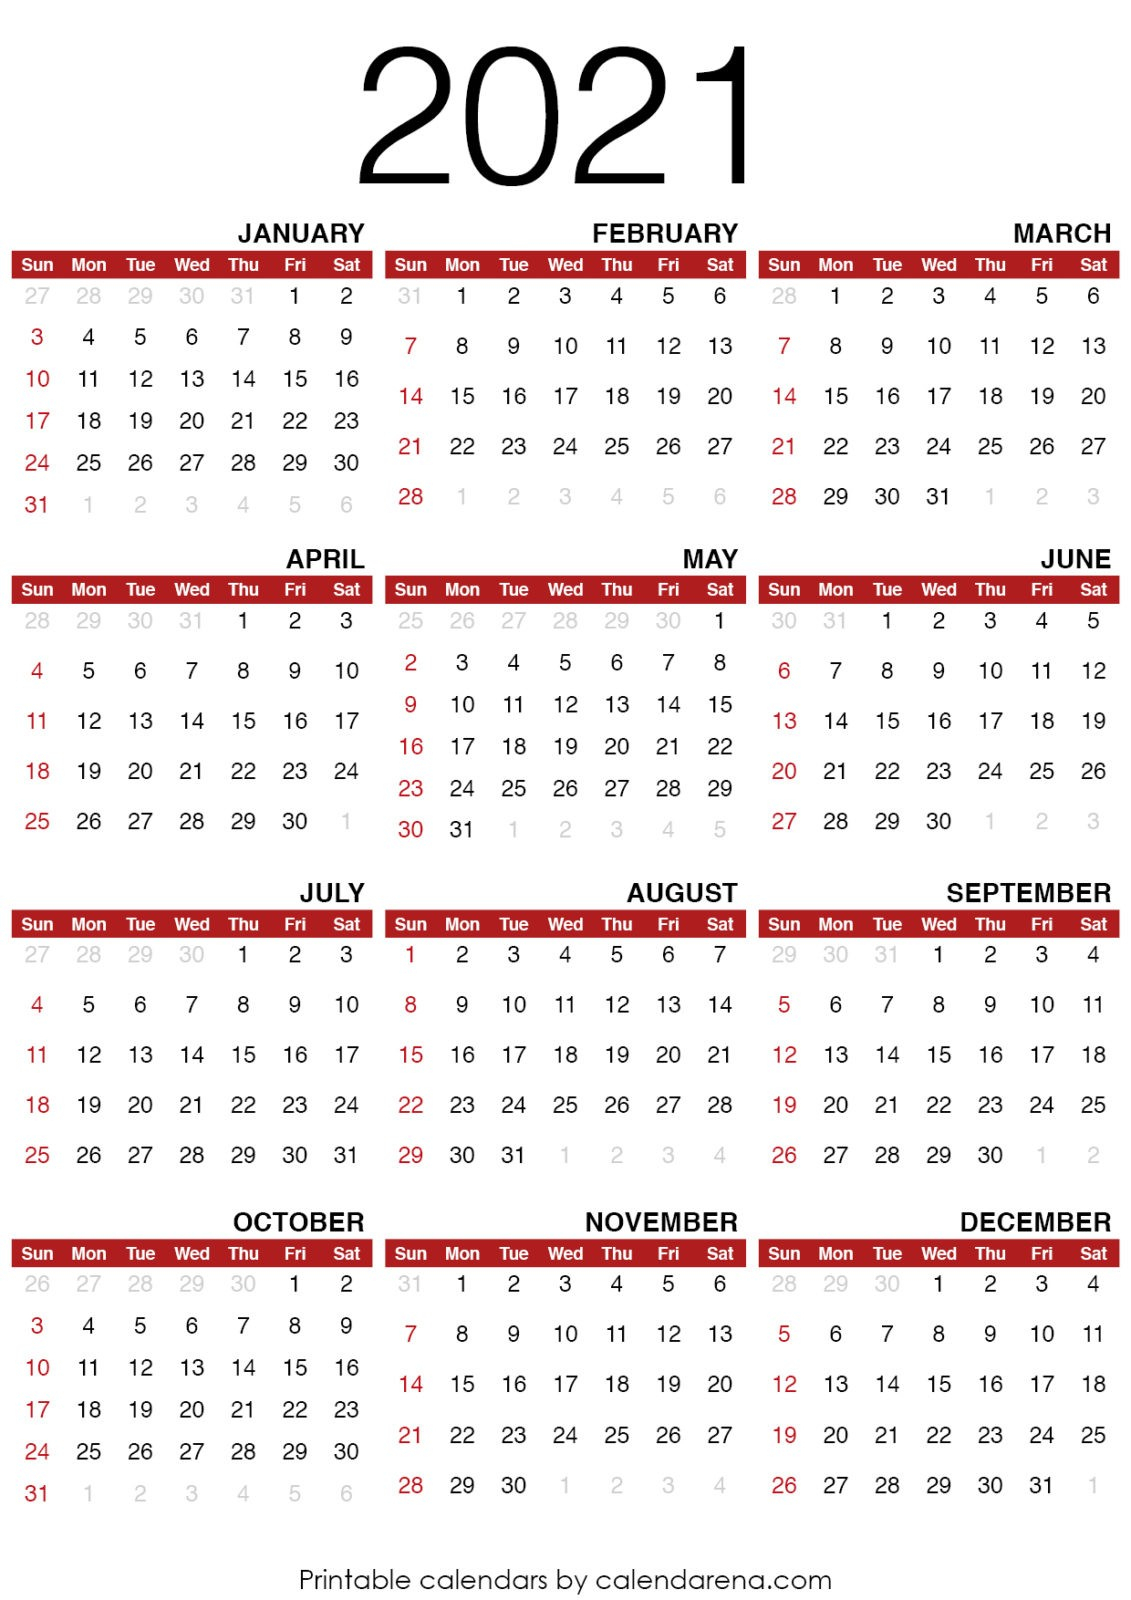 2021 Calendar Blank Calendar Printable Calendarena